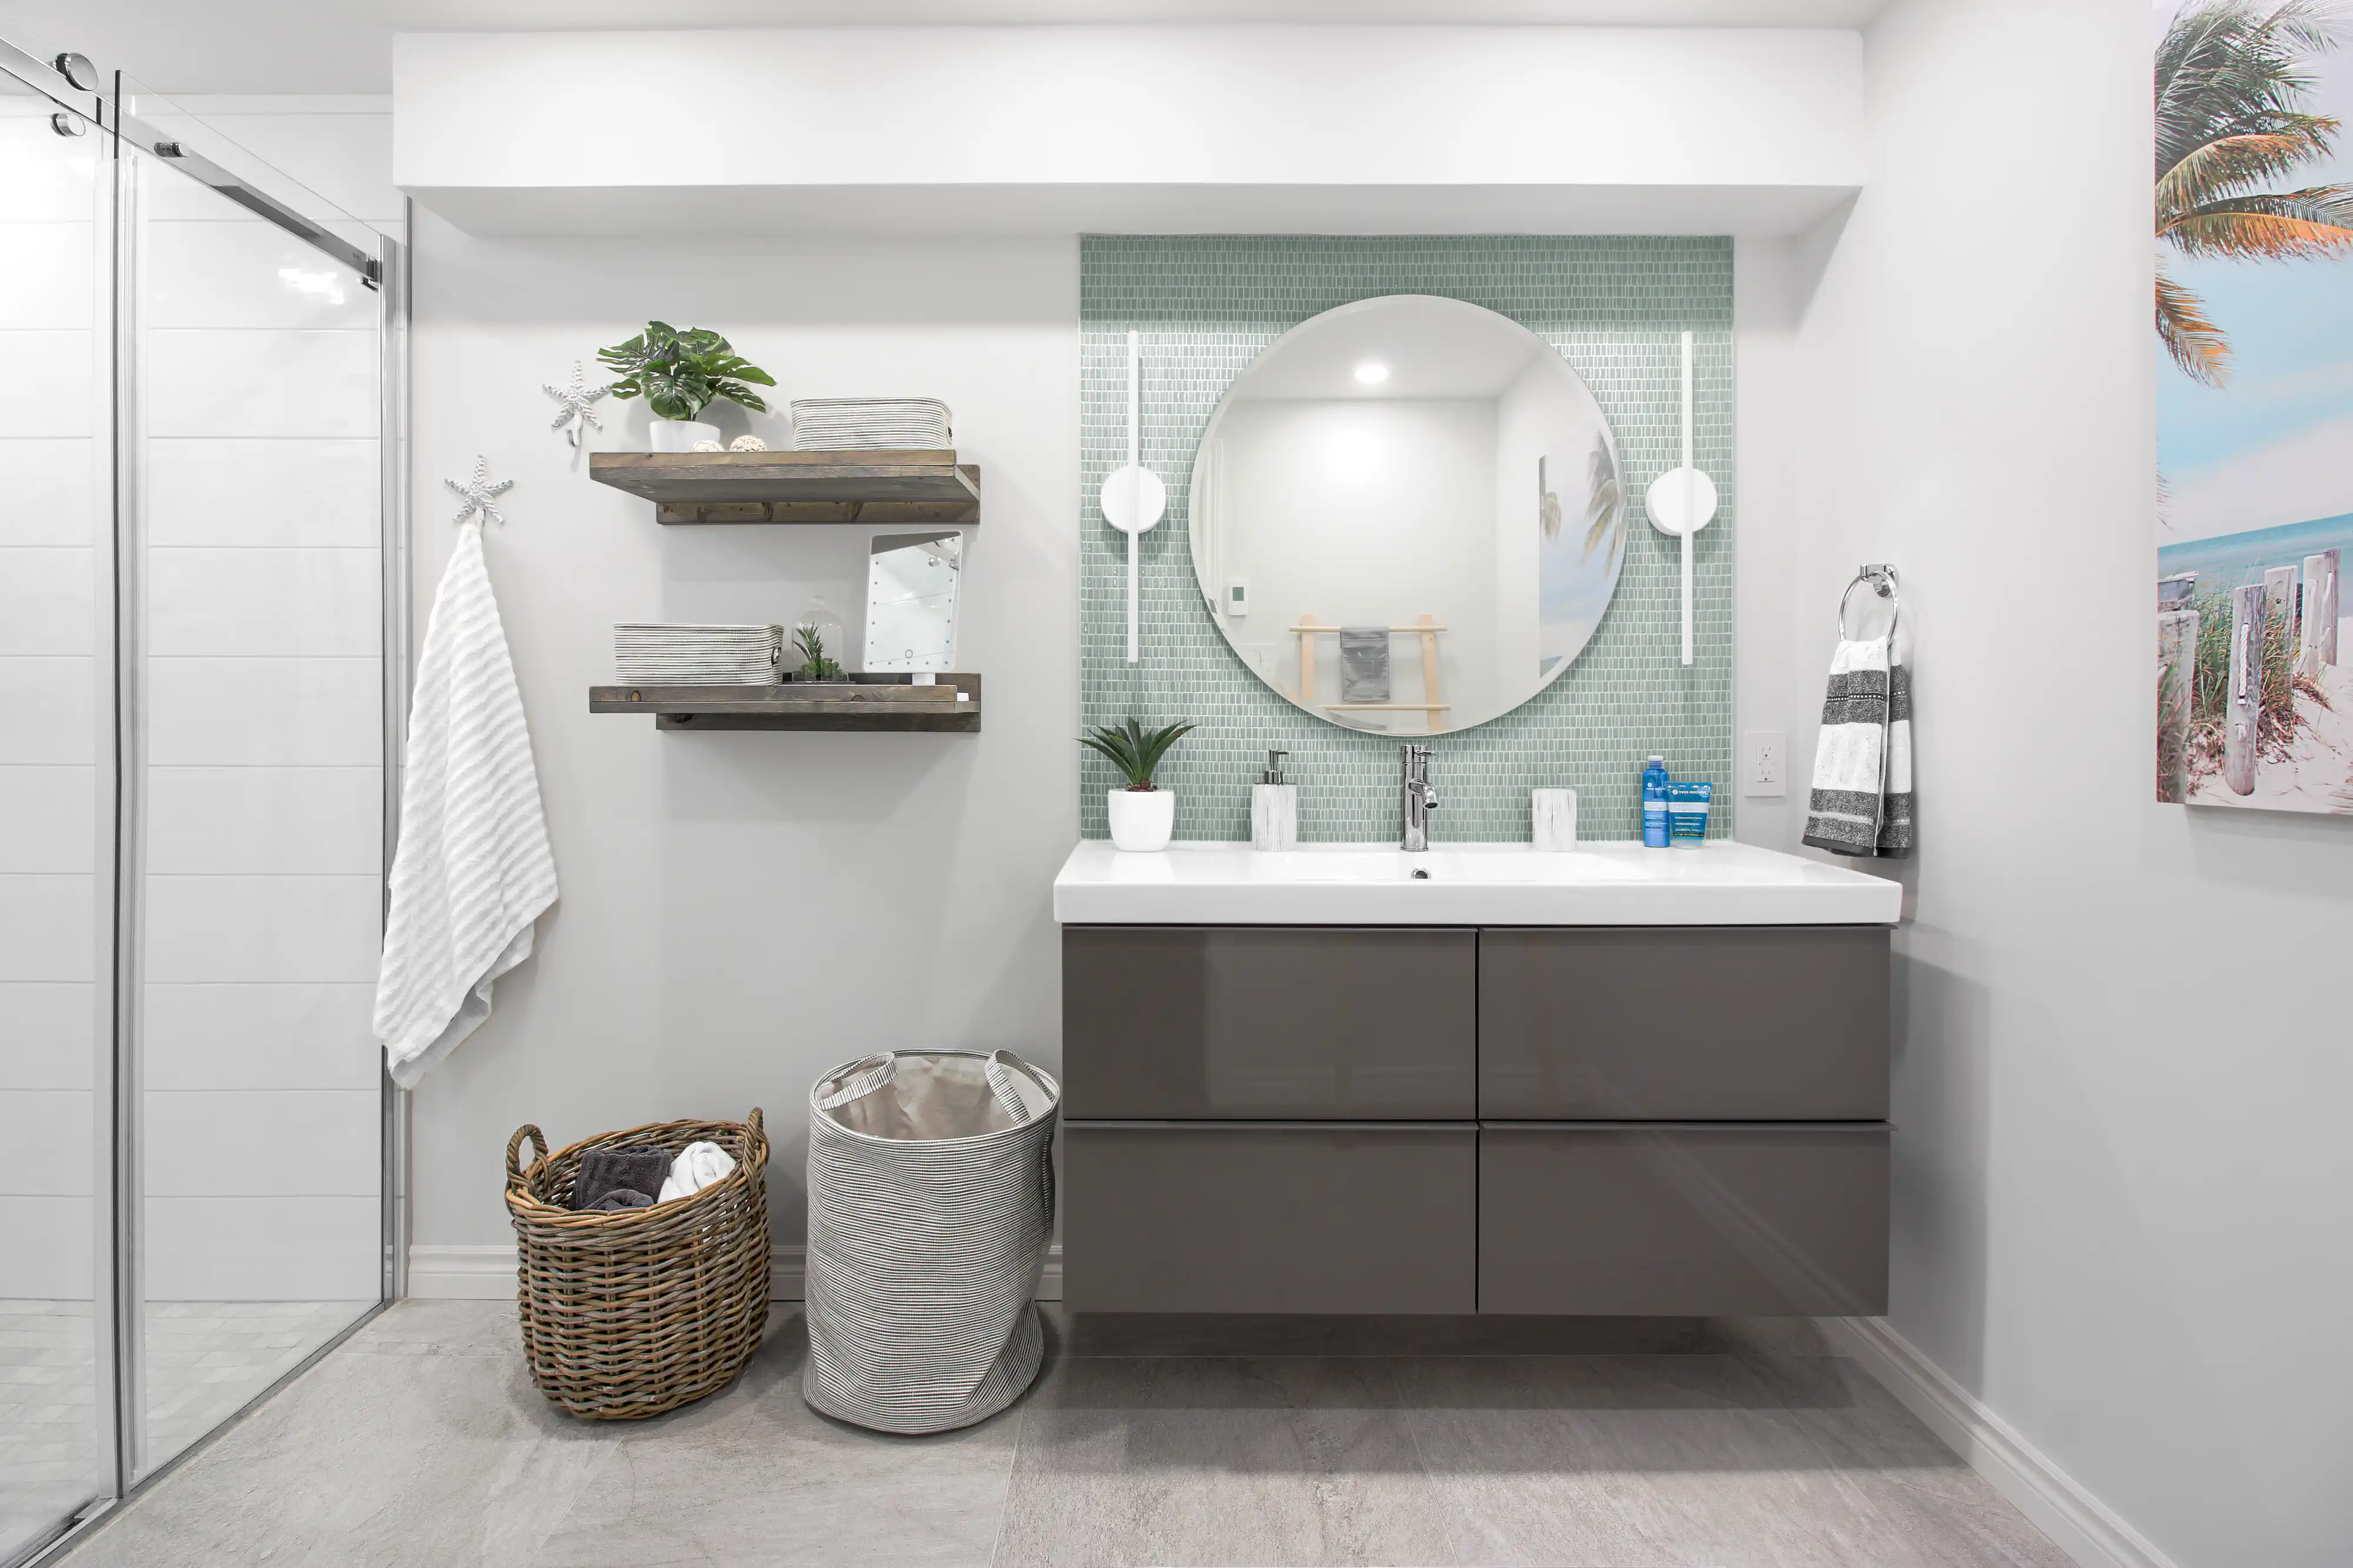 Une salle de bain moderne avec une douche, un lavabo, un miroir et des carreaux de mosaïque bleu-vert, intérieur signé Sarah Brown Design